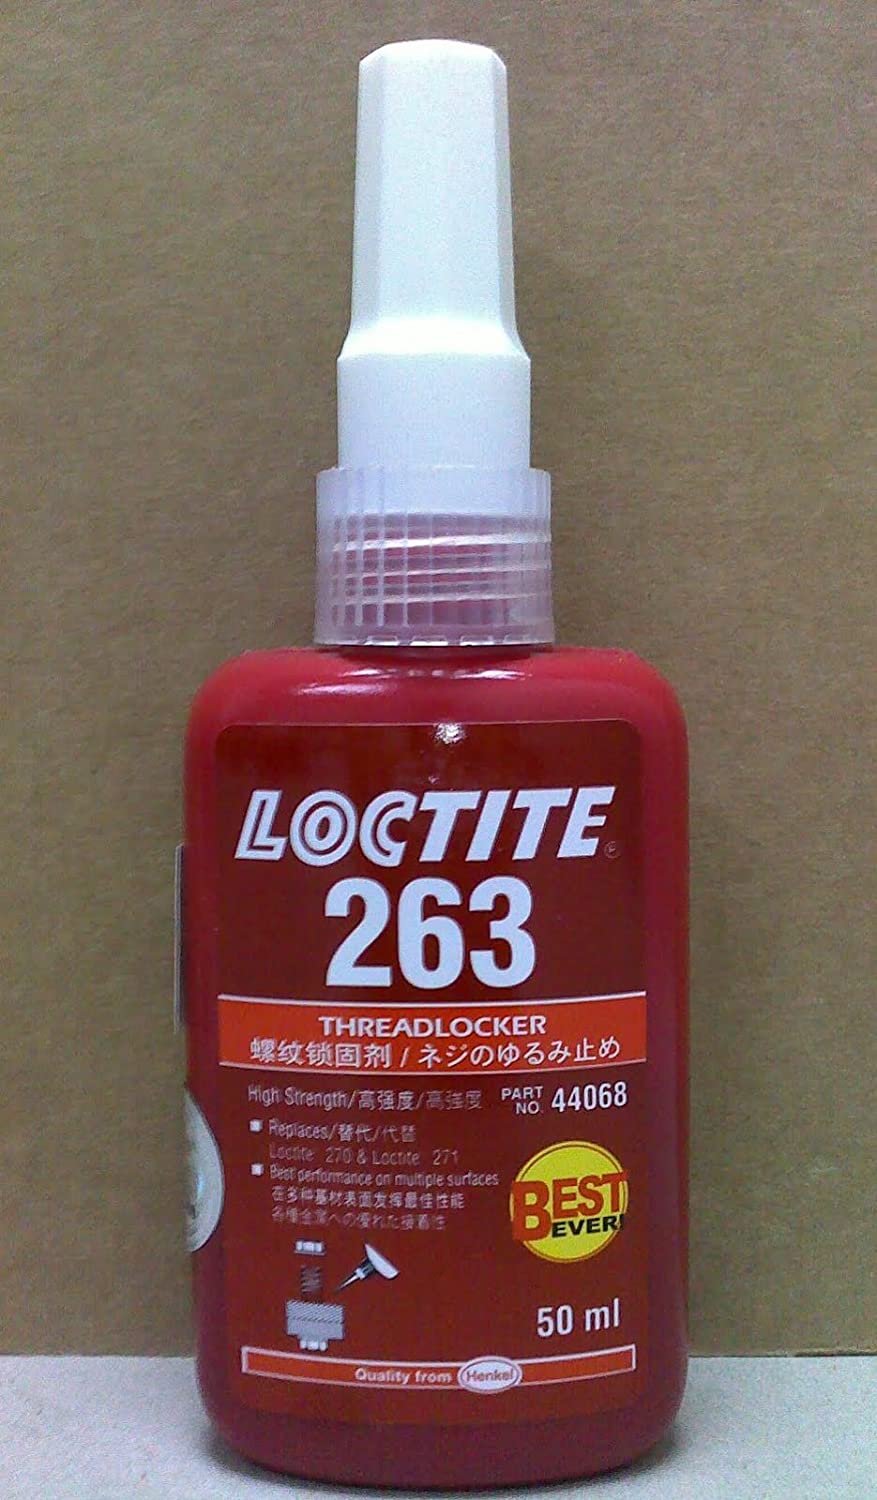 Loctite 44068 263 Threadlocker 50ml Replaces Loctite 270 Loctite 271